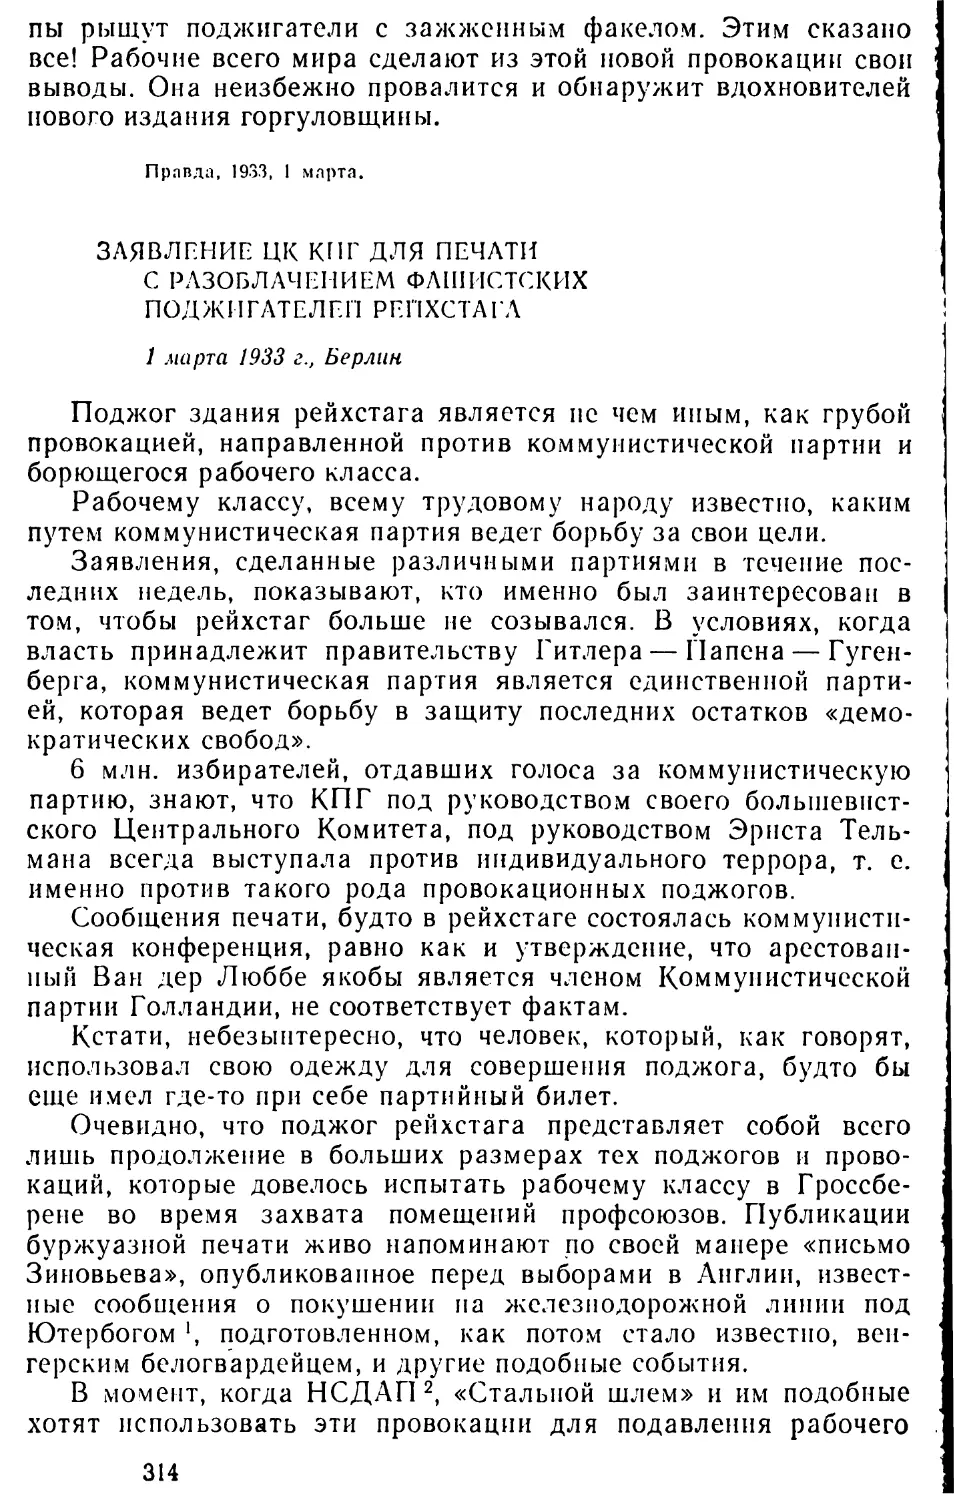 Заявление ЦК КПГ для печати с разоблачением фашистских поджигателей рейхстага. 1 марта 1933 г